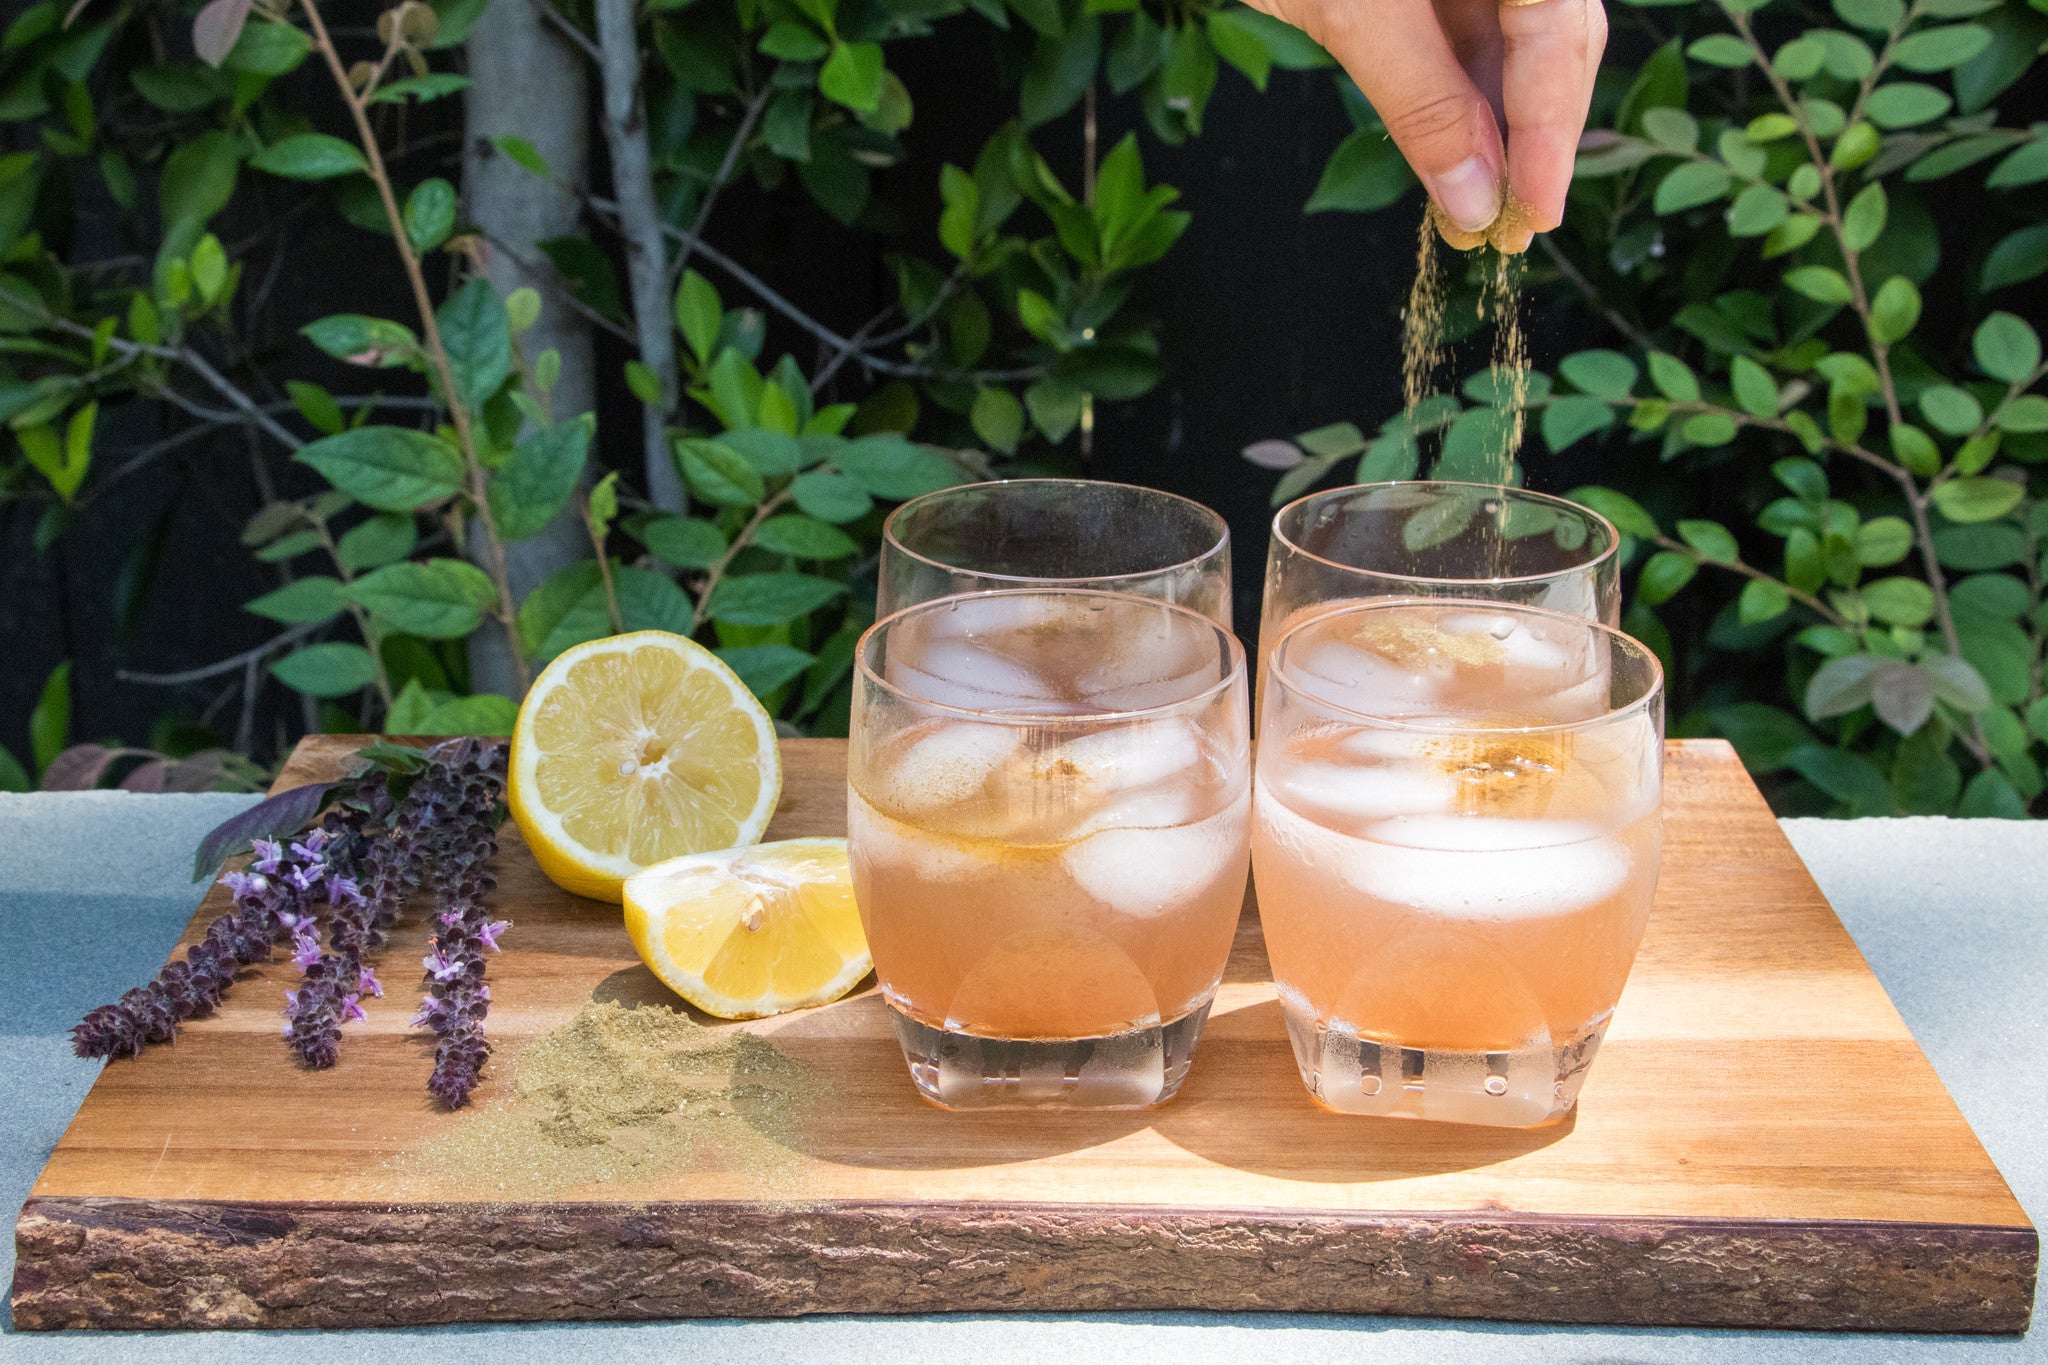 5 O'Clock Box Cocktail Kit – Garden Inspired Living